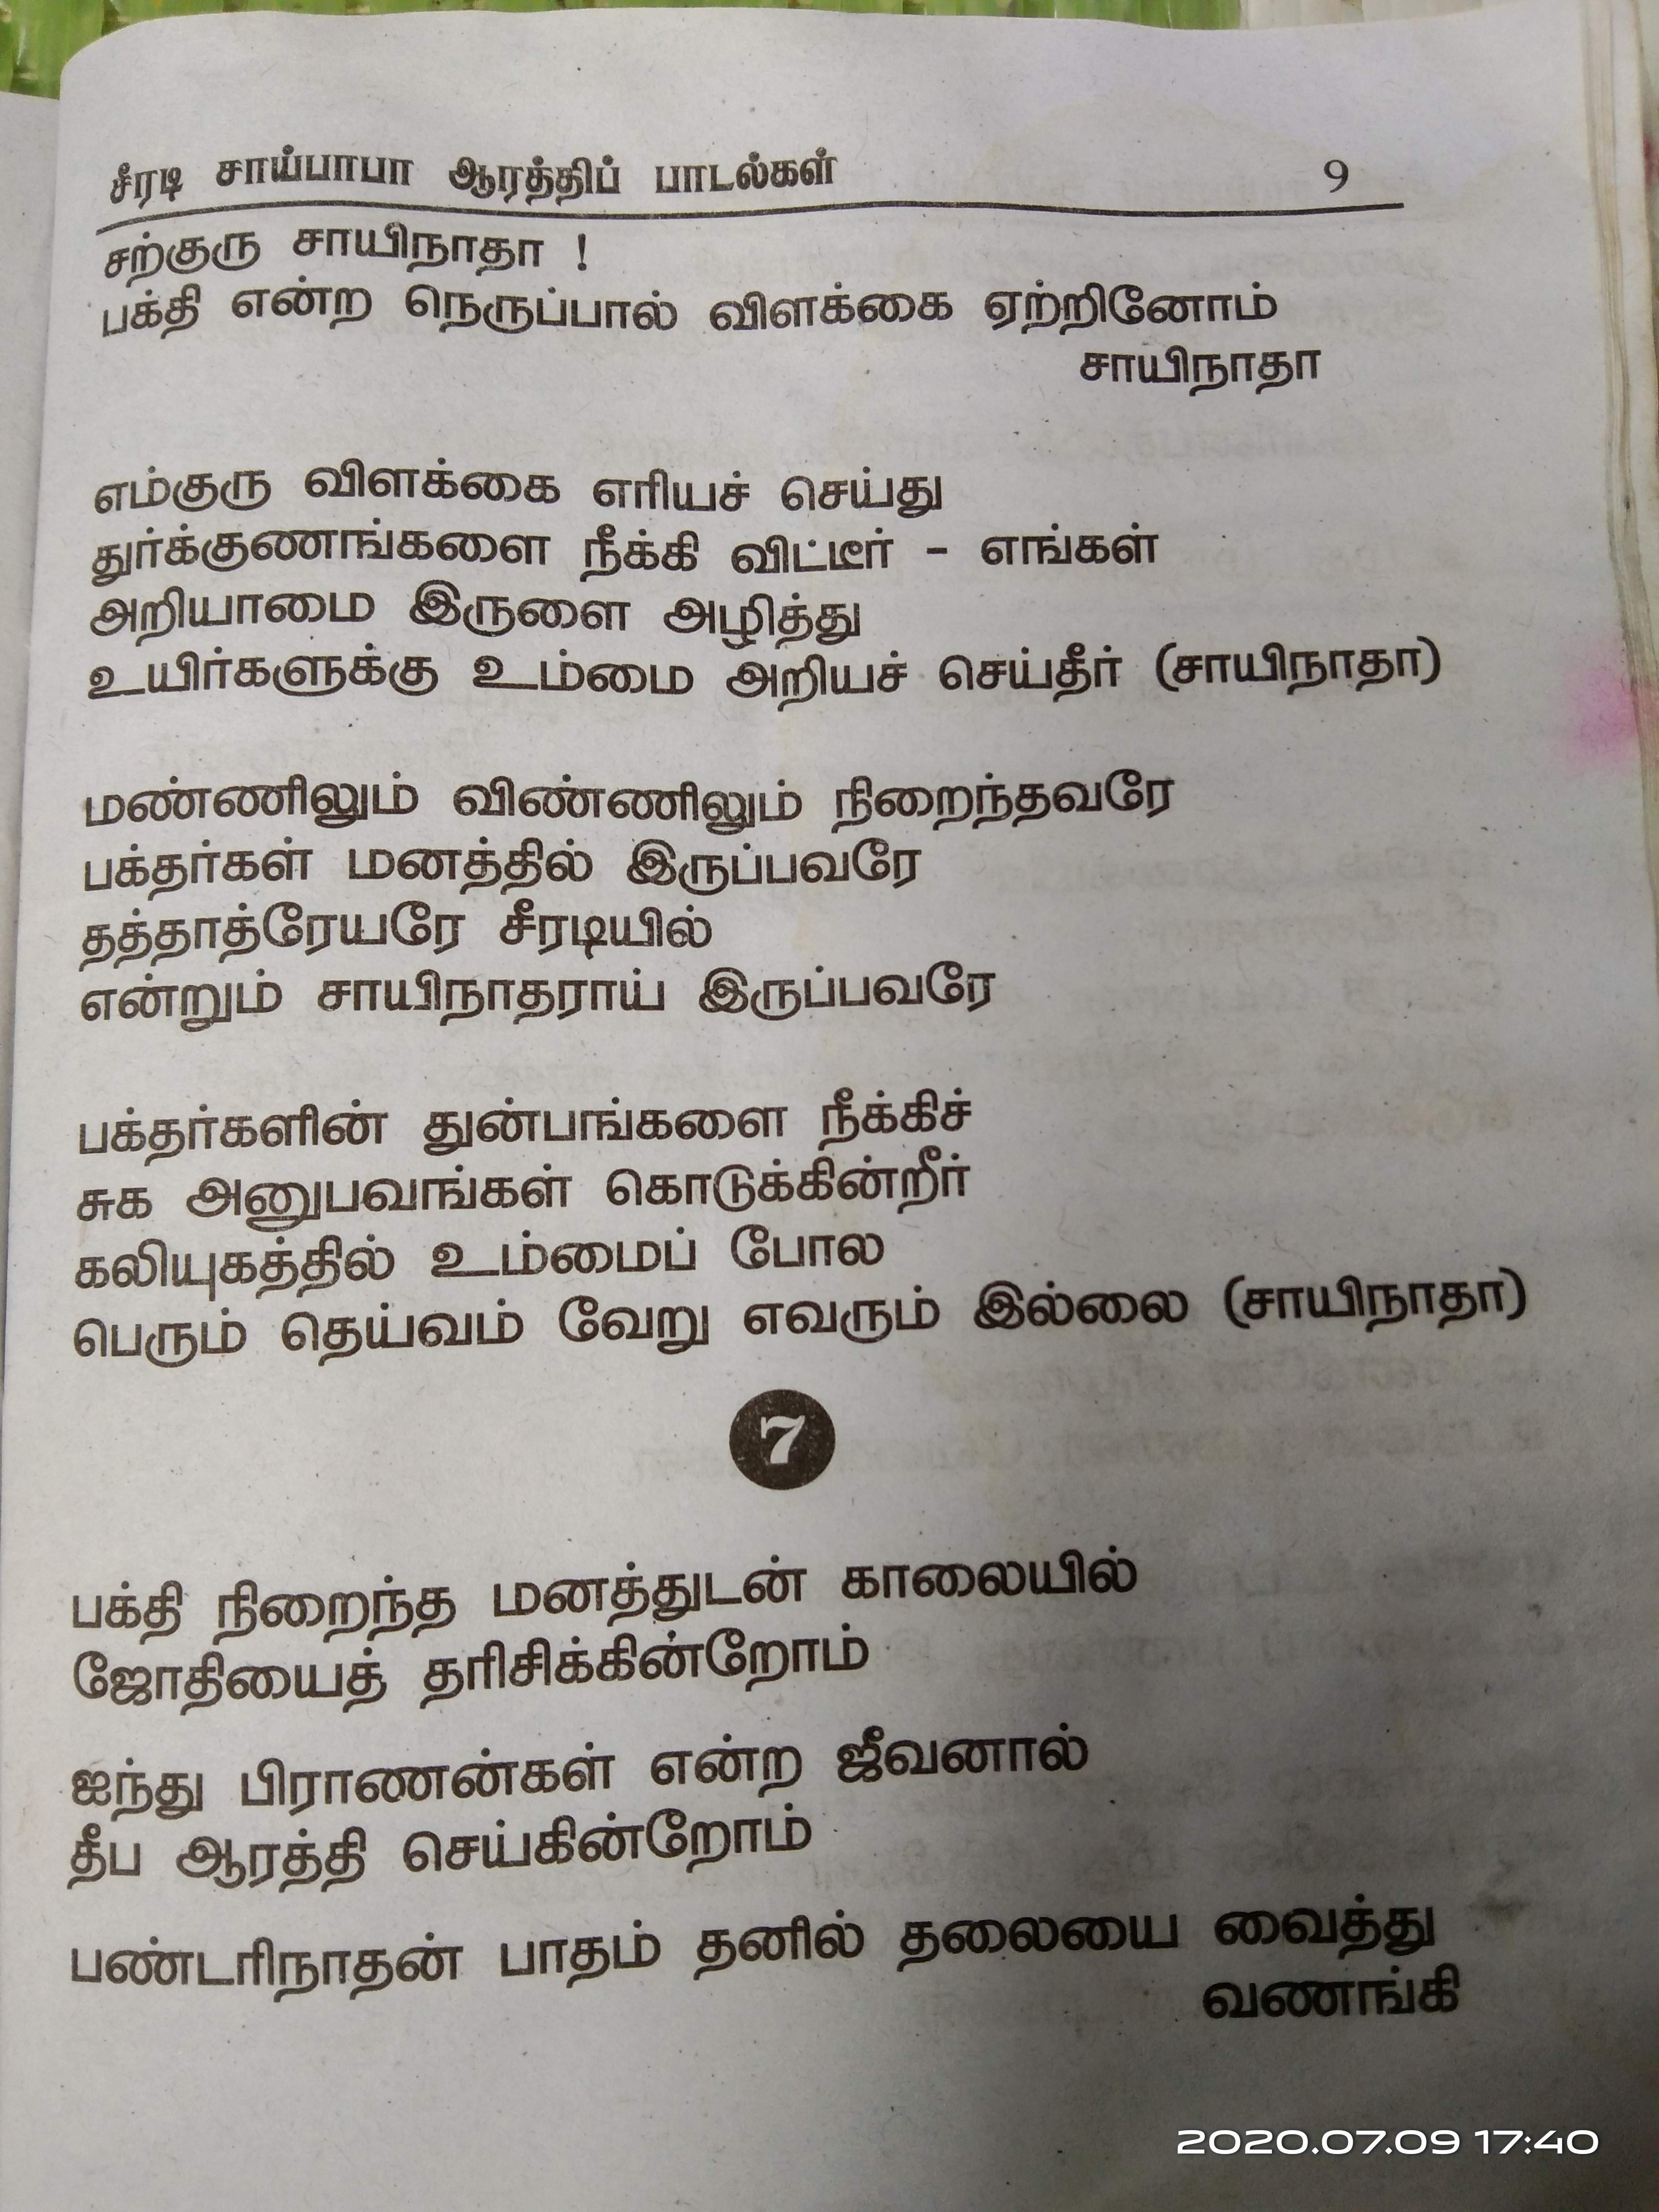 sivapuranam lyrics in tamil with meaning